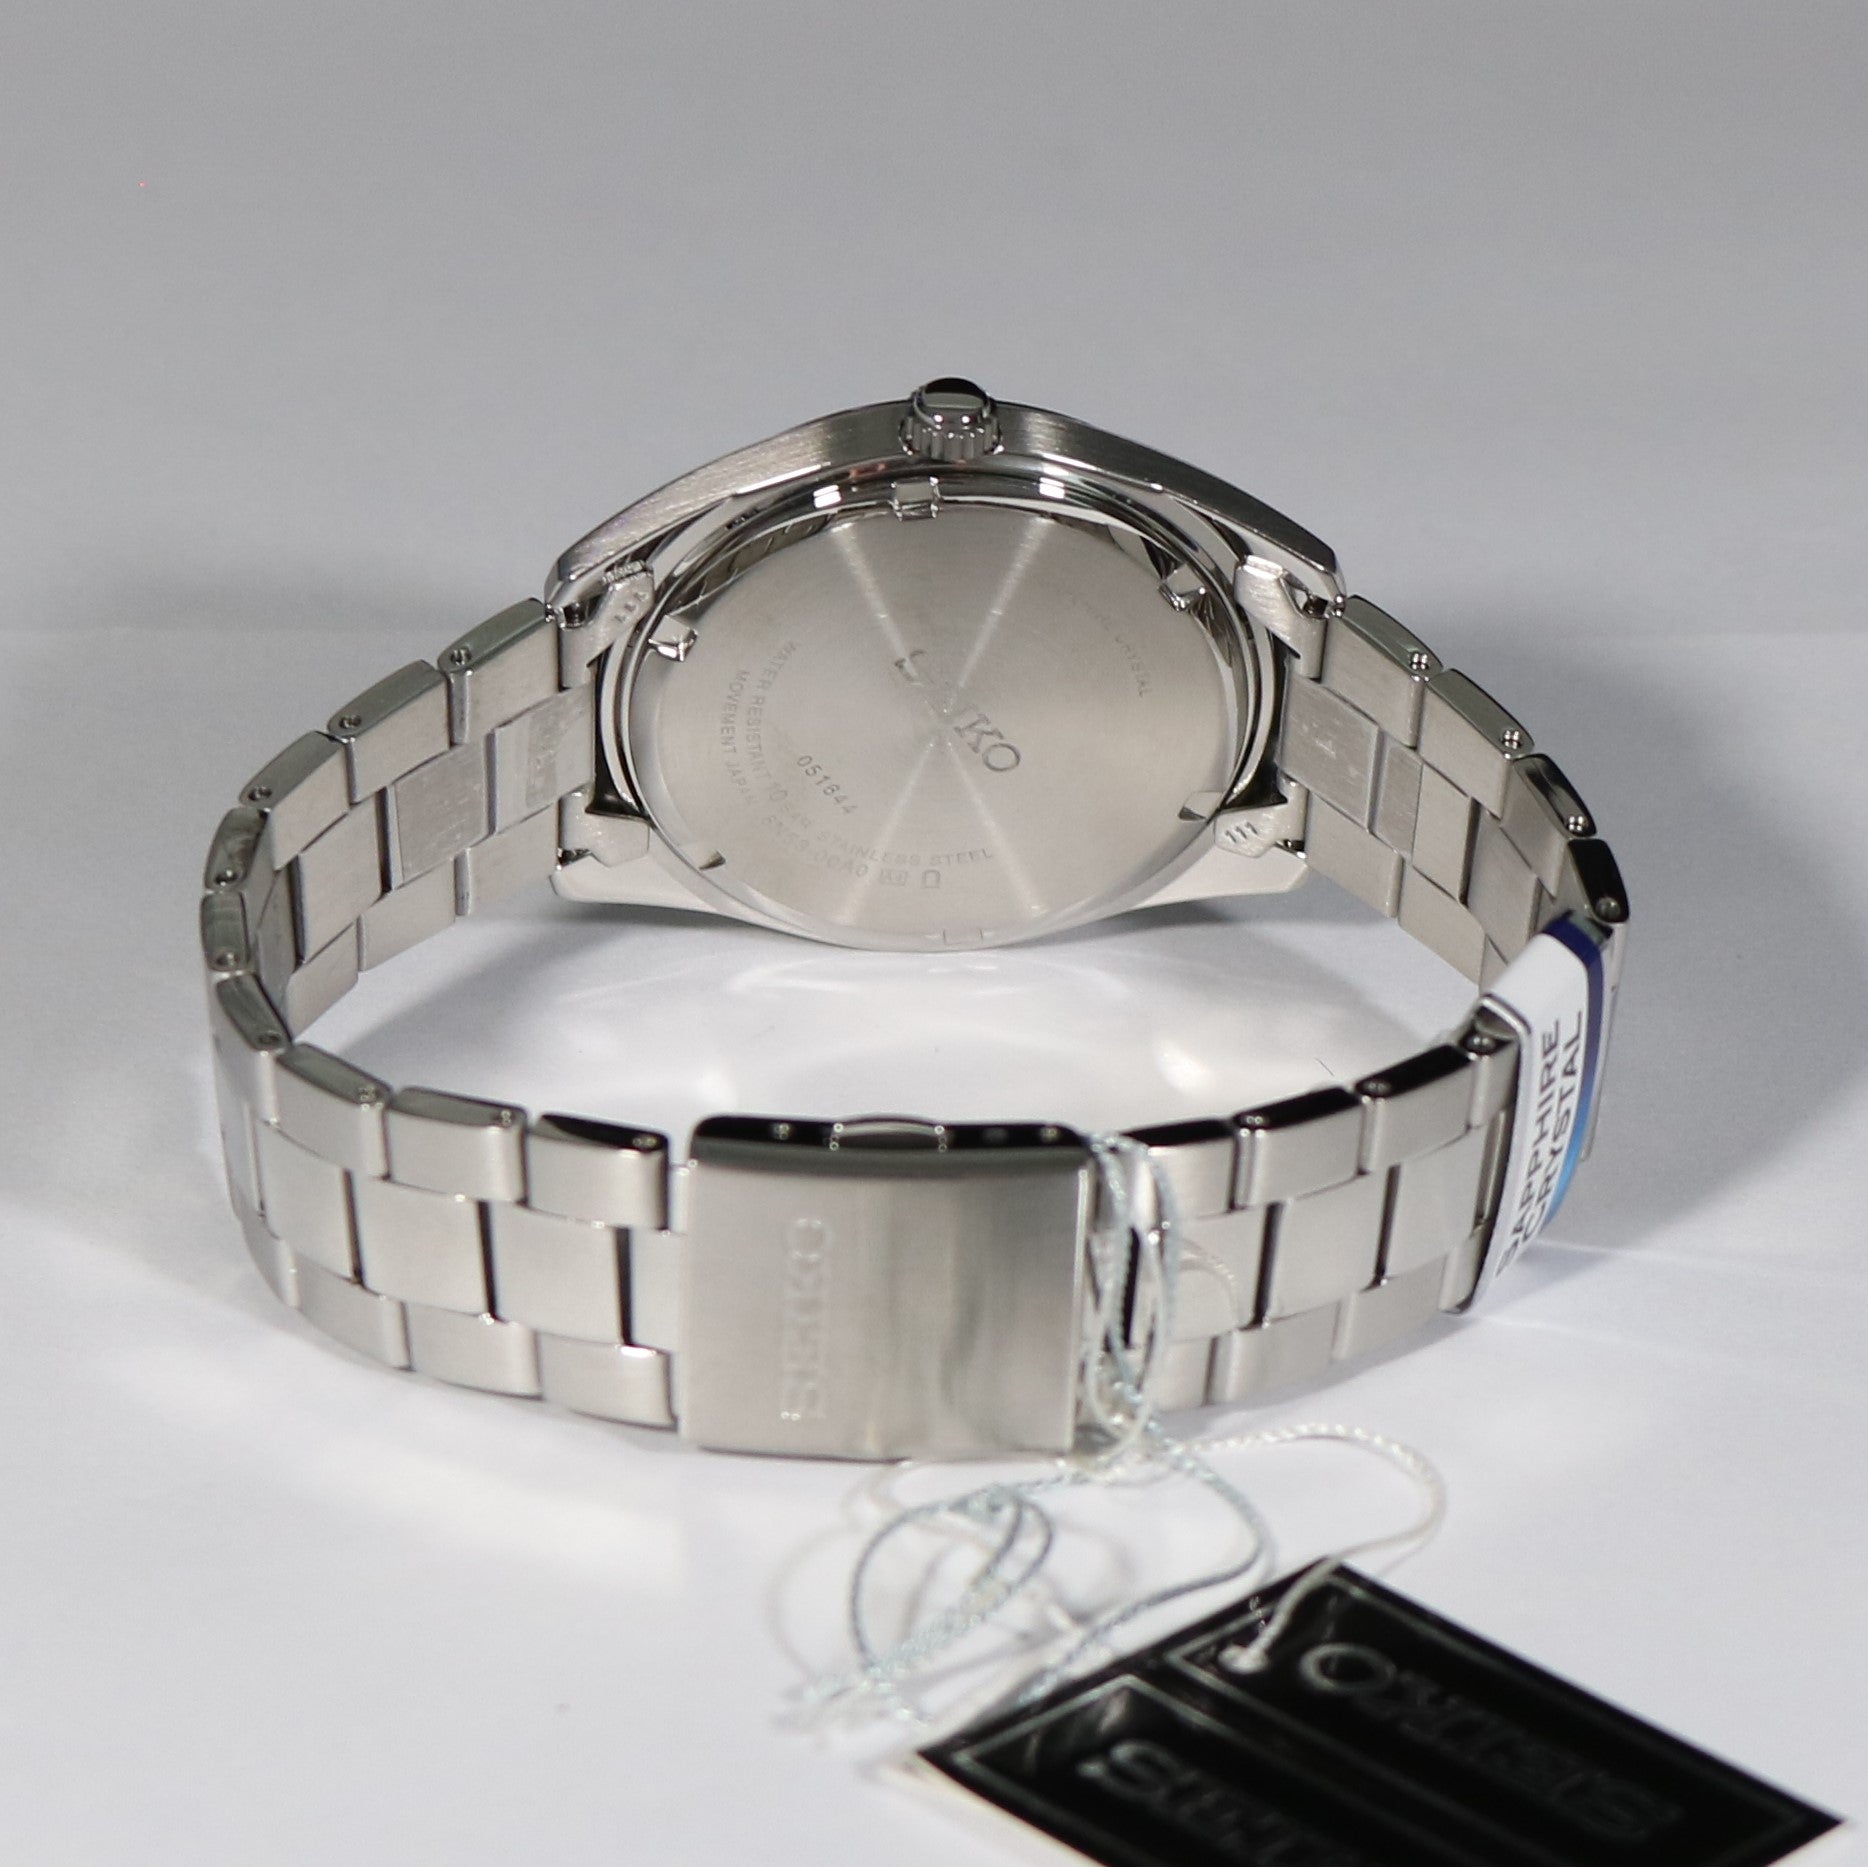 Seiko Quartz Grey Dial Stainless Steel Men's Watch SUR343P1 – Chronobuy